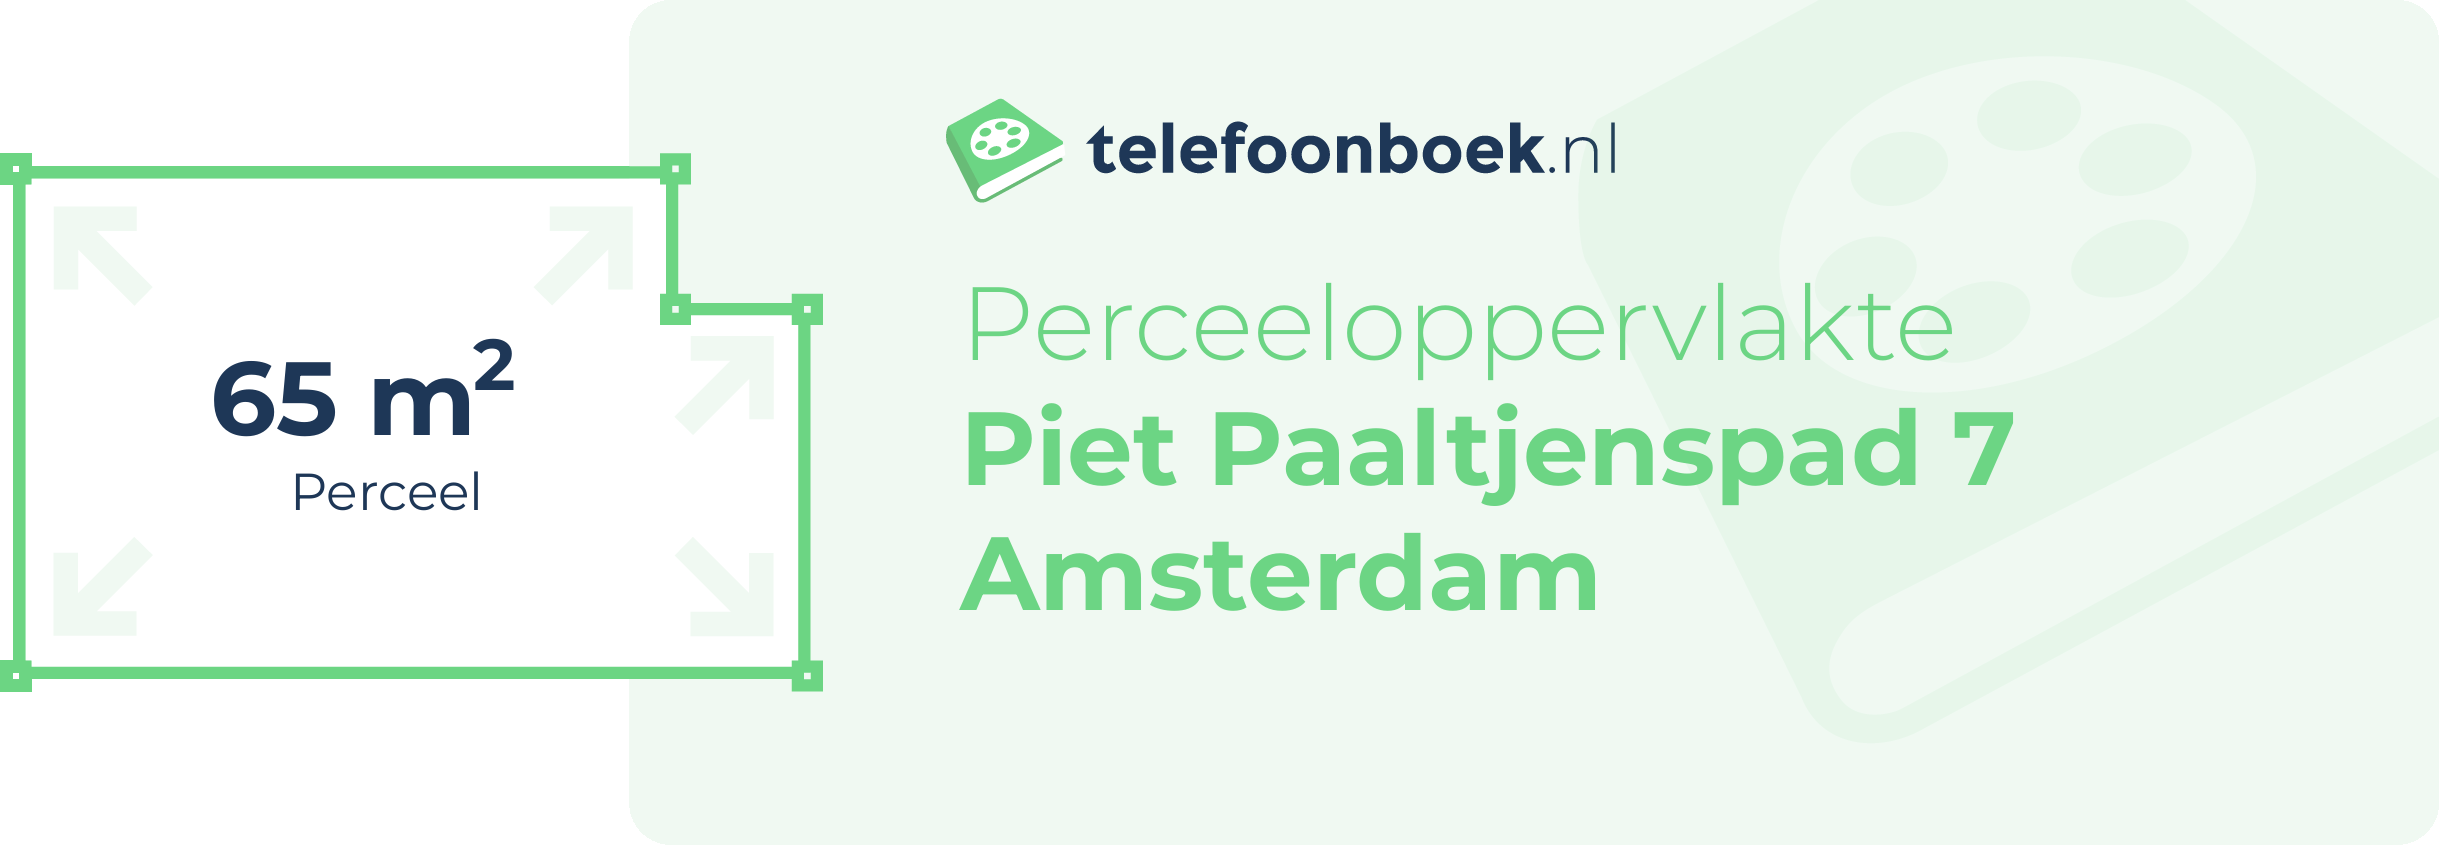 Perceeloppervlakte Piet Paaltjenspad 7 Amsterdam